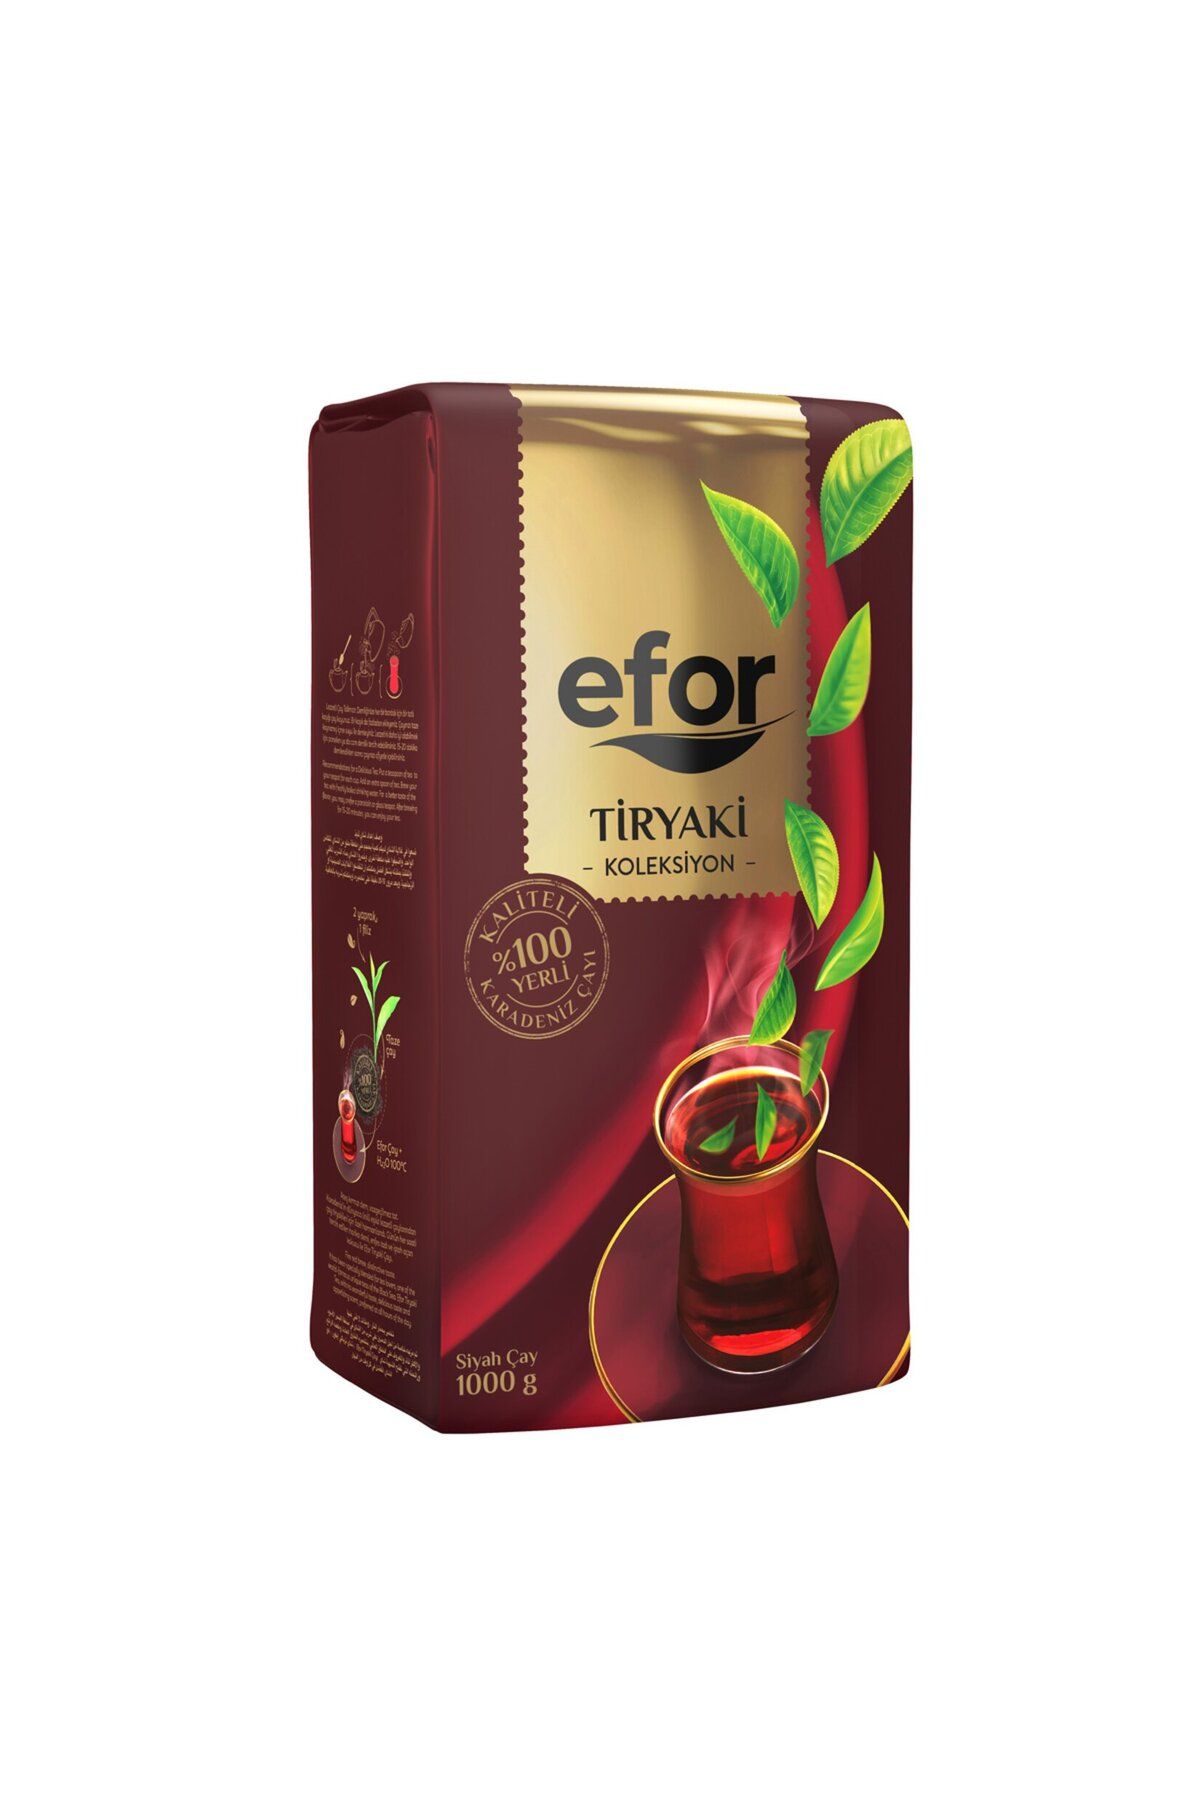 Efor Tiryaki Kolleksiyon Siyah Çay 1 Kg